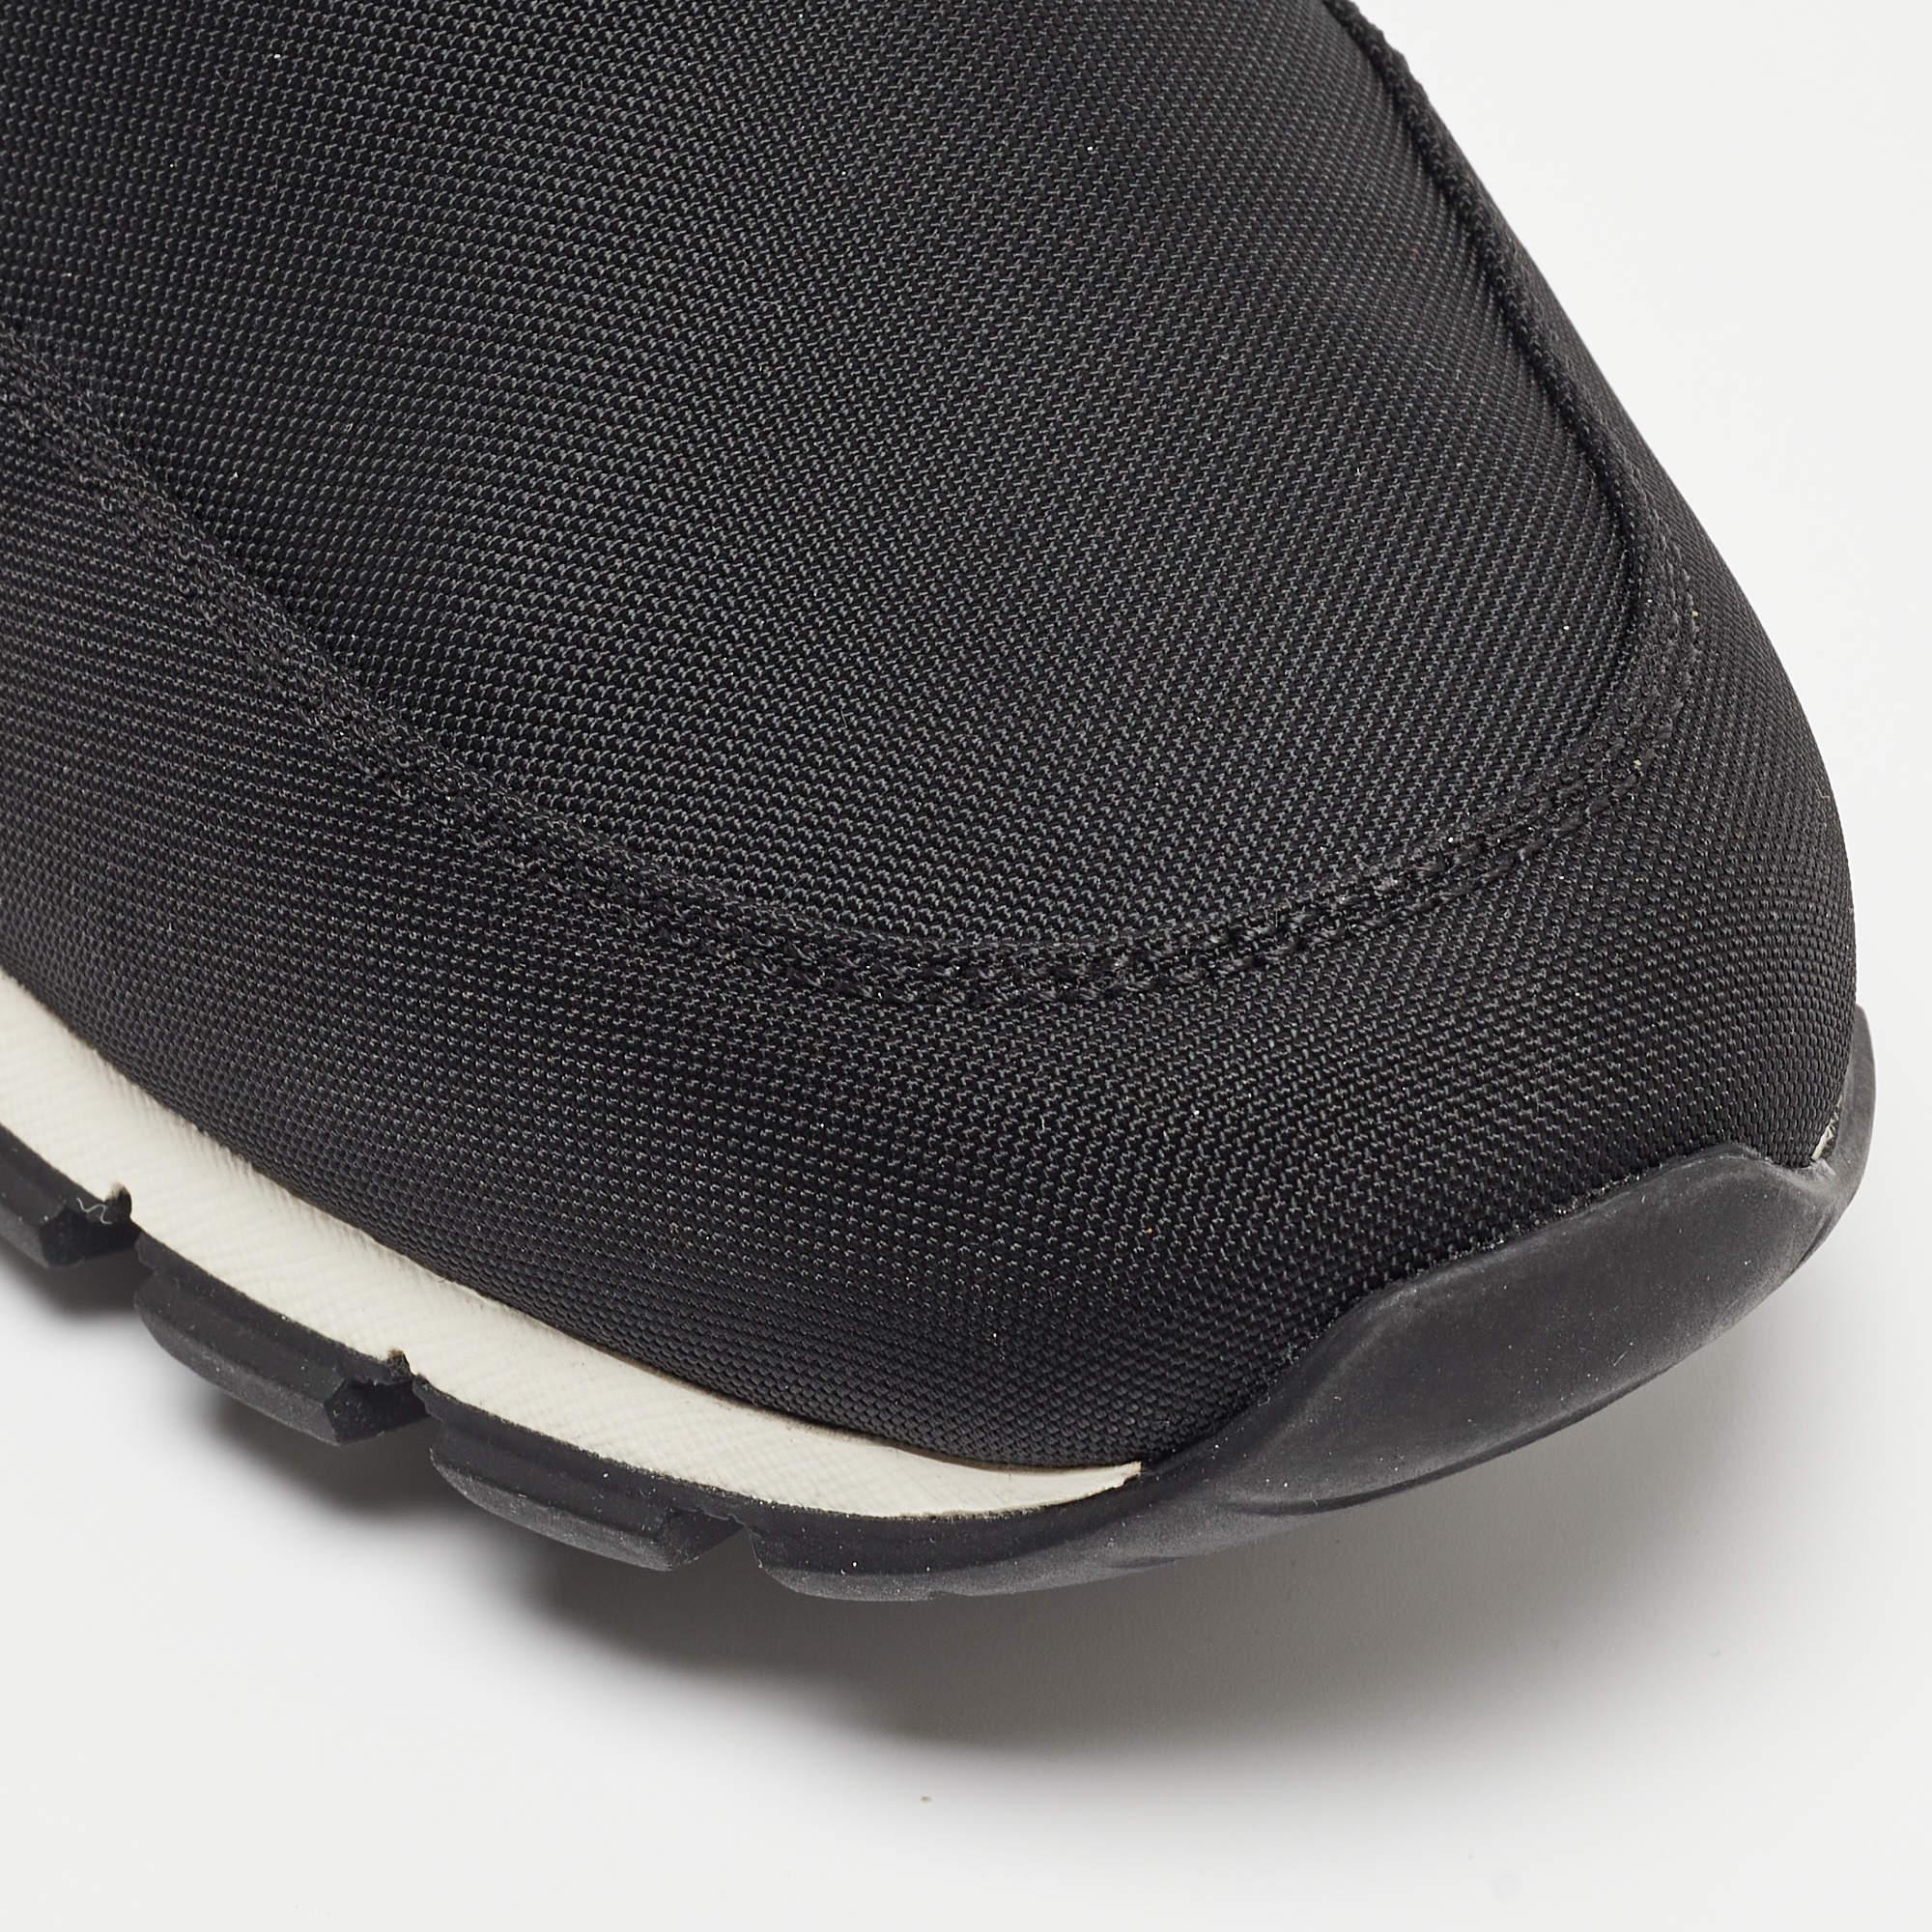 Prada Sport Black Nylon Slip On Sneakers Size 43 2